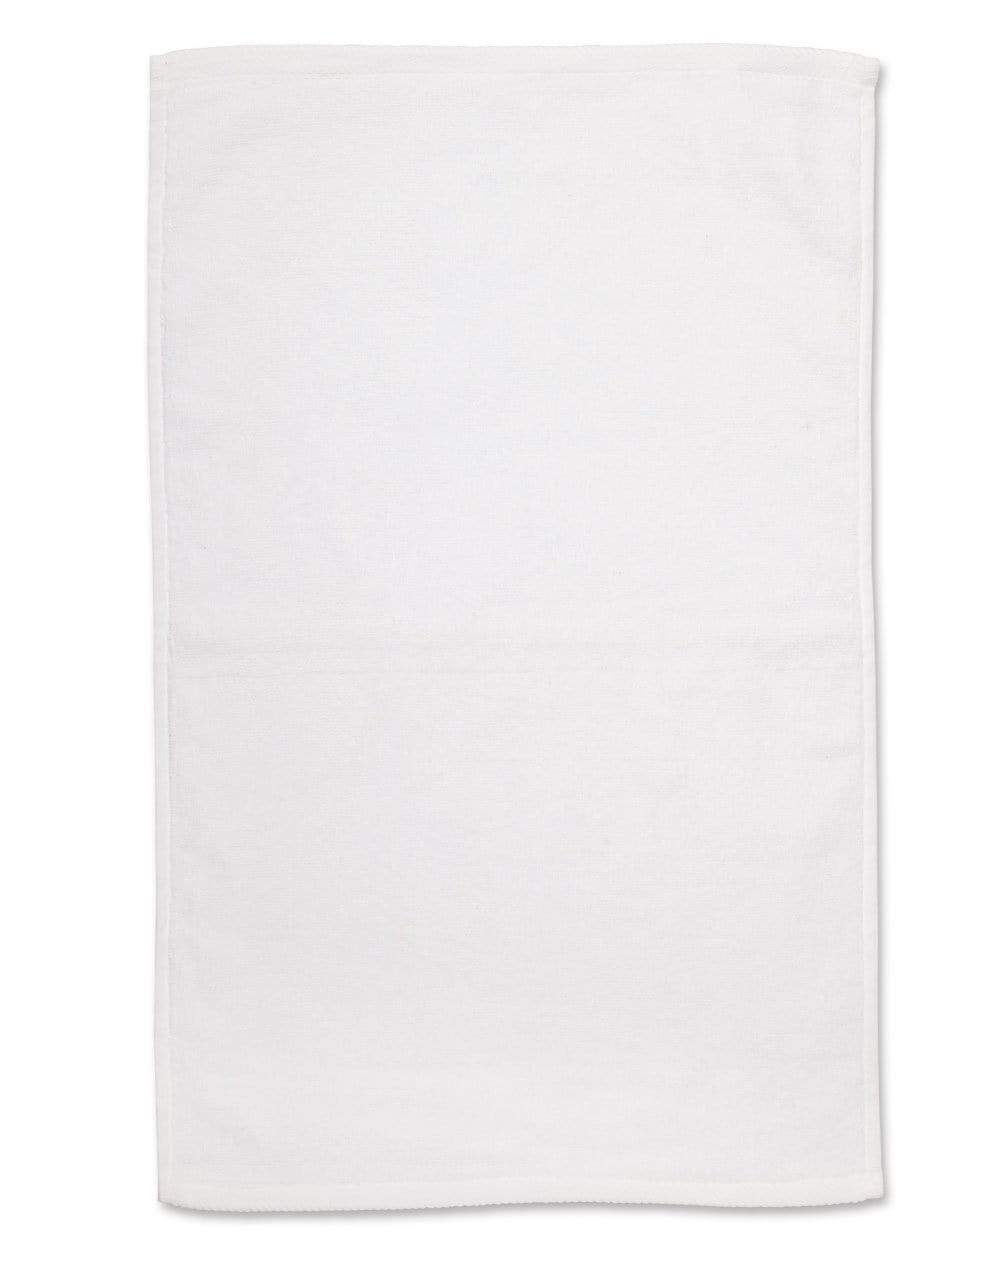 Hand Towel TW02 Work Wear Australian Industrial Wear White 40cm x 60cm 